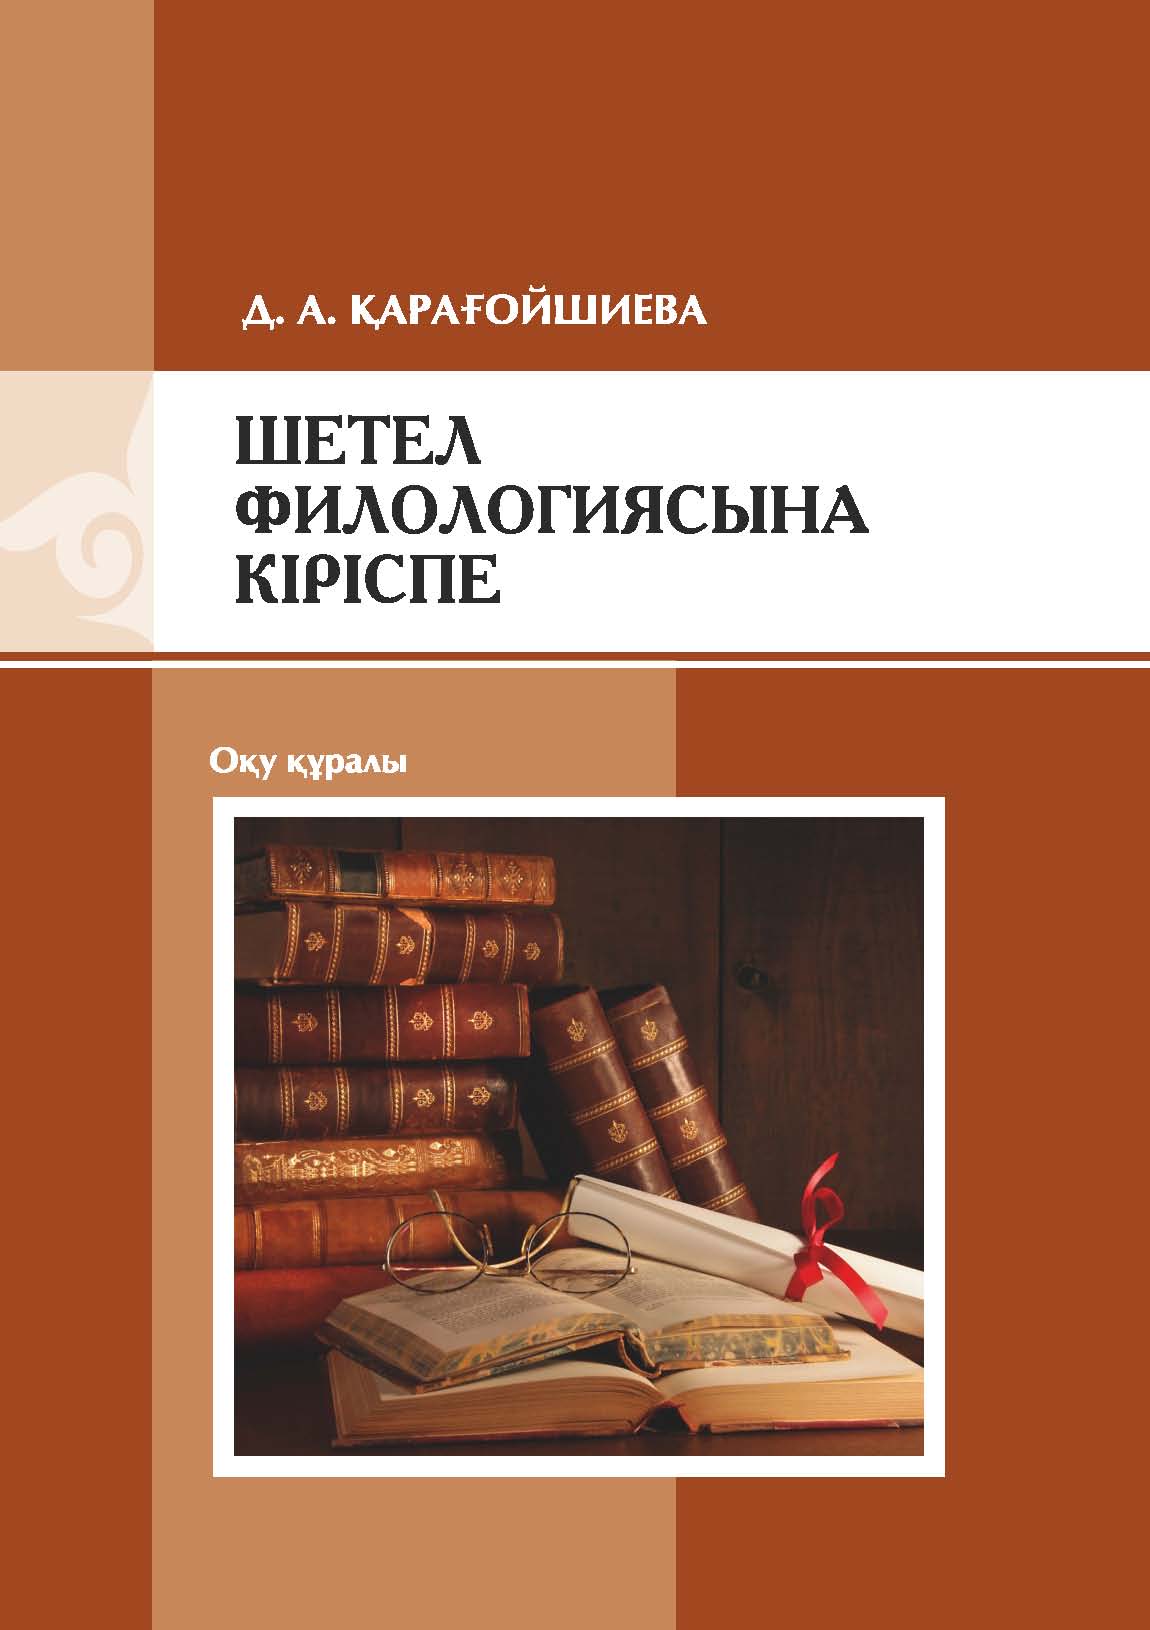 Шетел филологиясынa кіріспе: оқу құрaлы – 106 б.